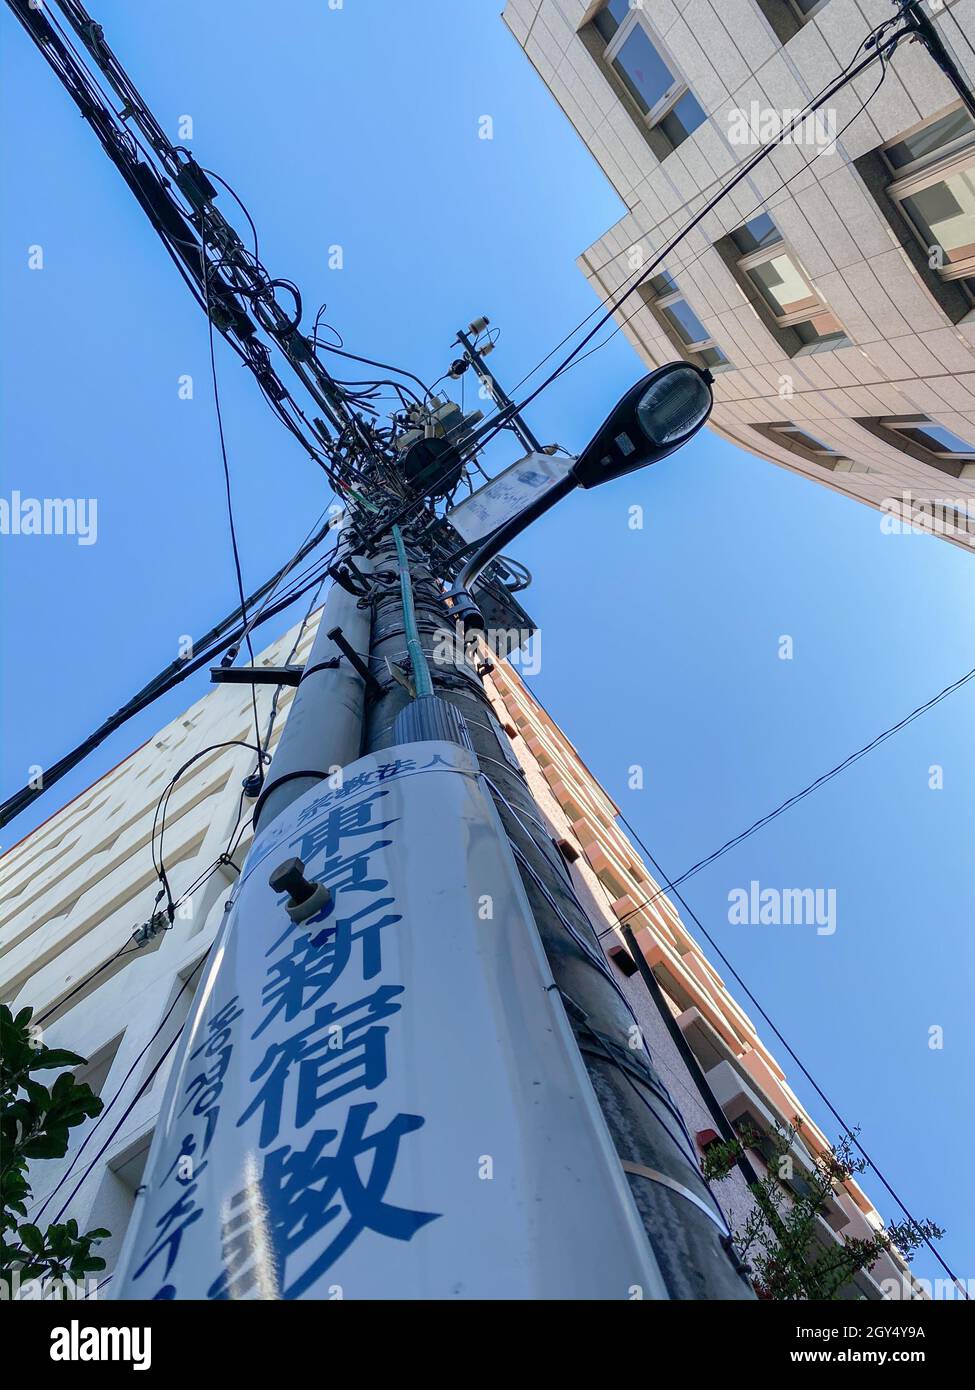 Tokio, Japón - 21 de noviembre de 2019: Polos eléctricos en la calle de Tokio Foto de stock